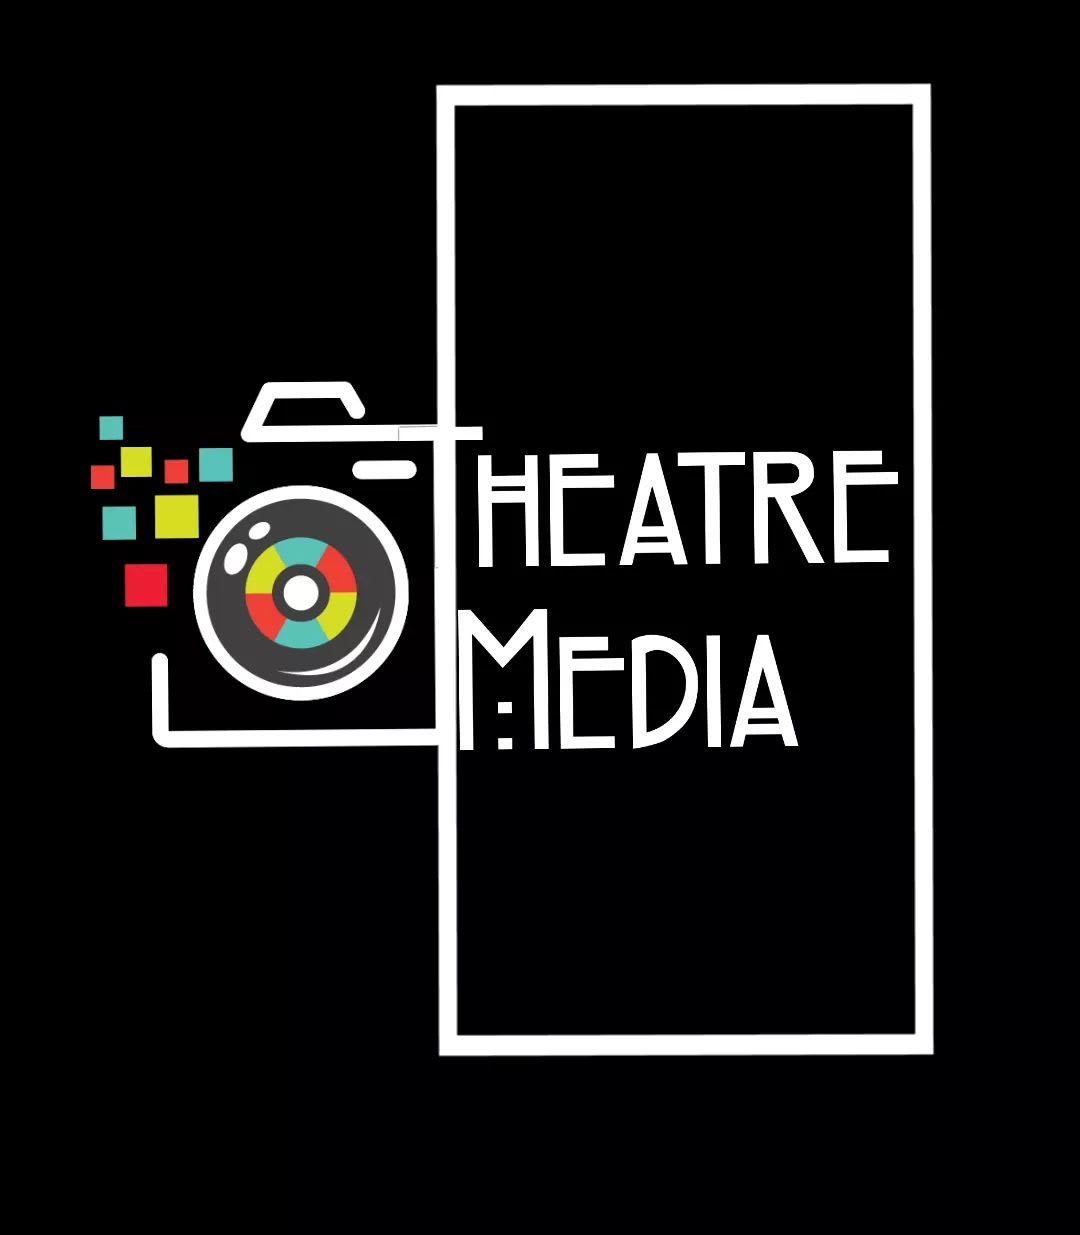 Theatre Media